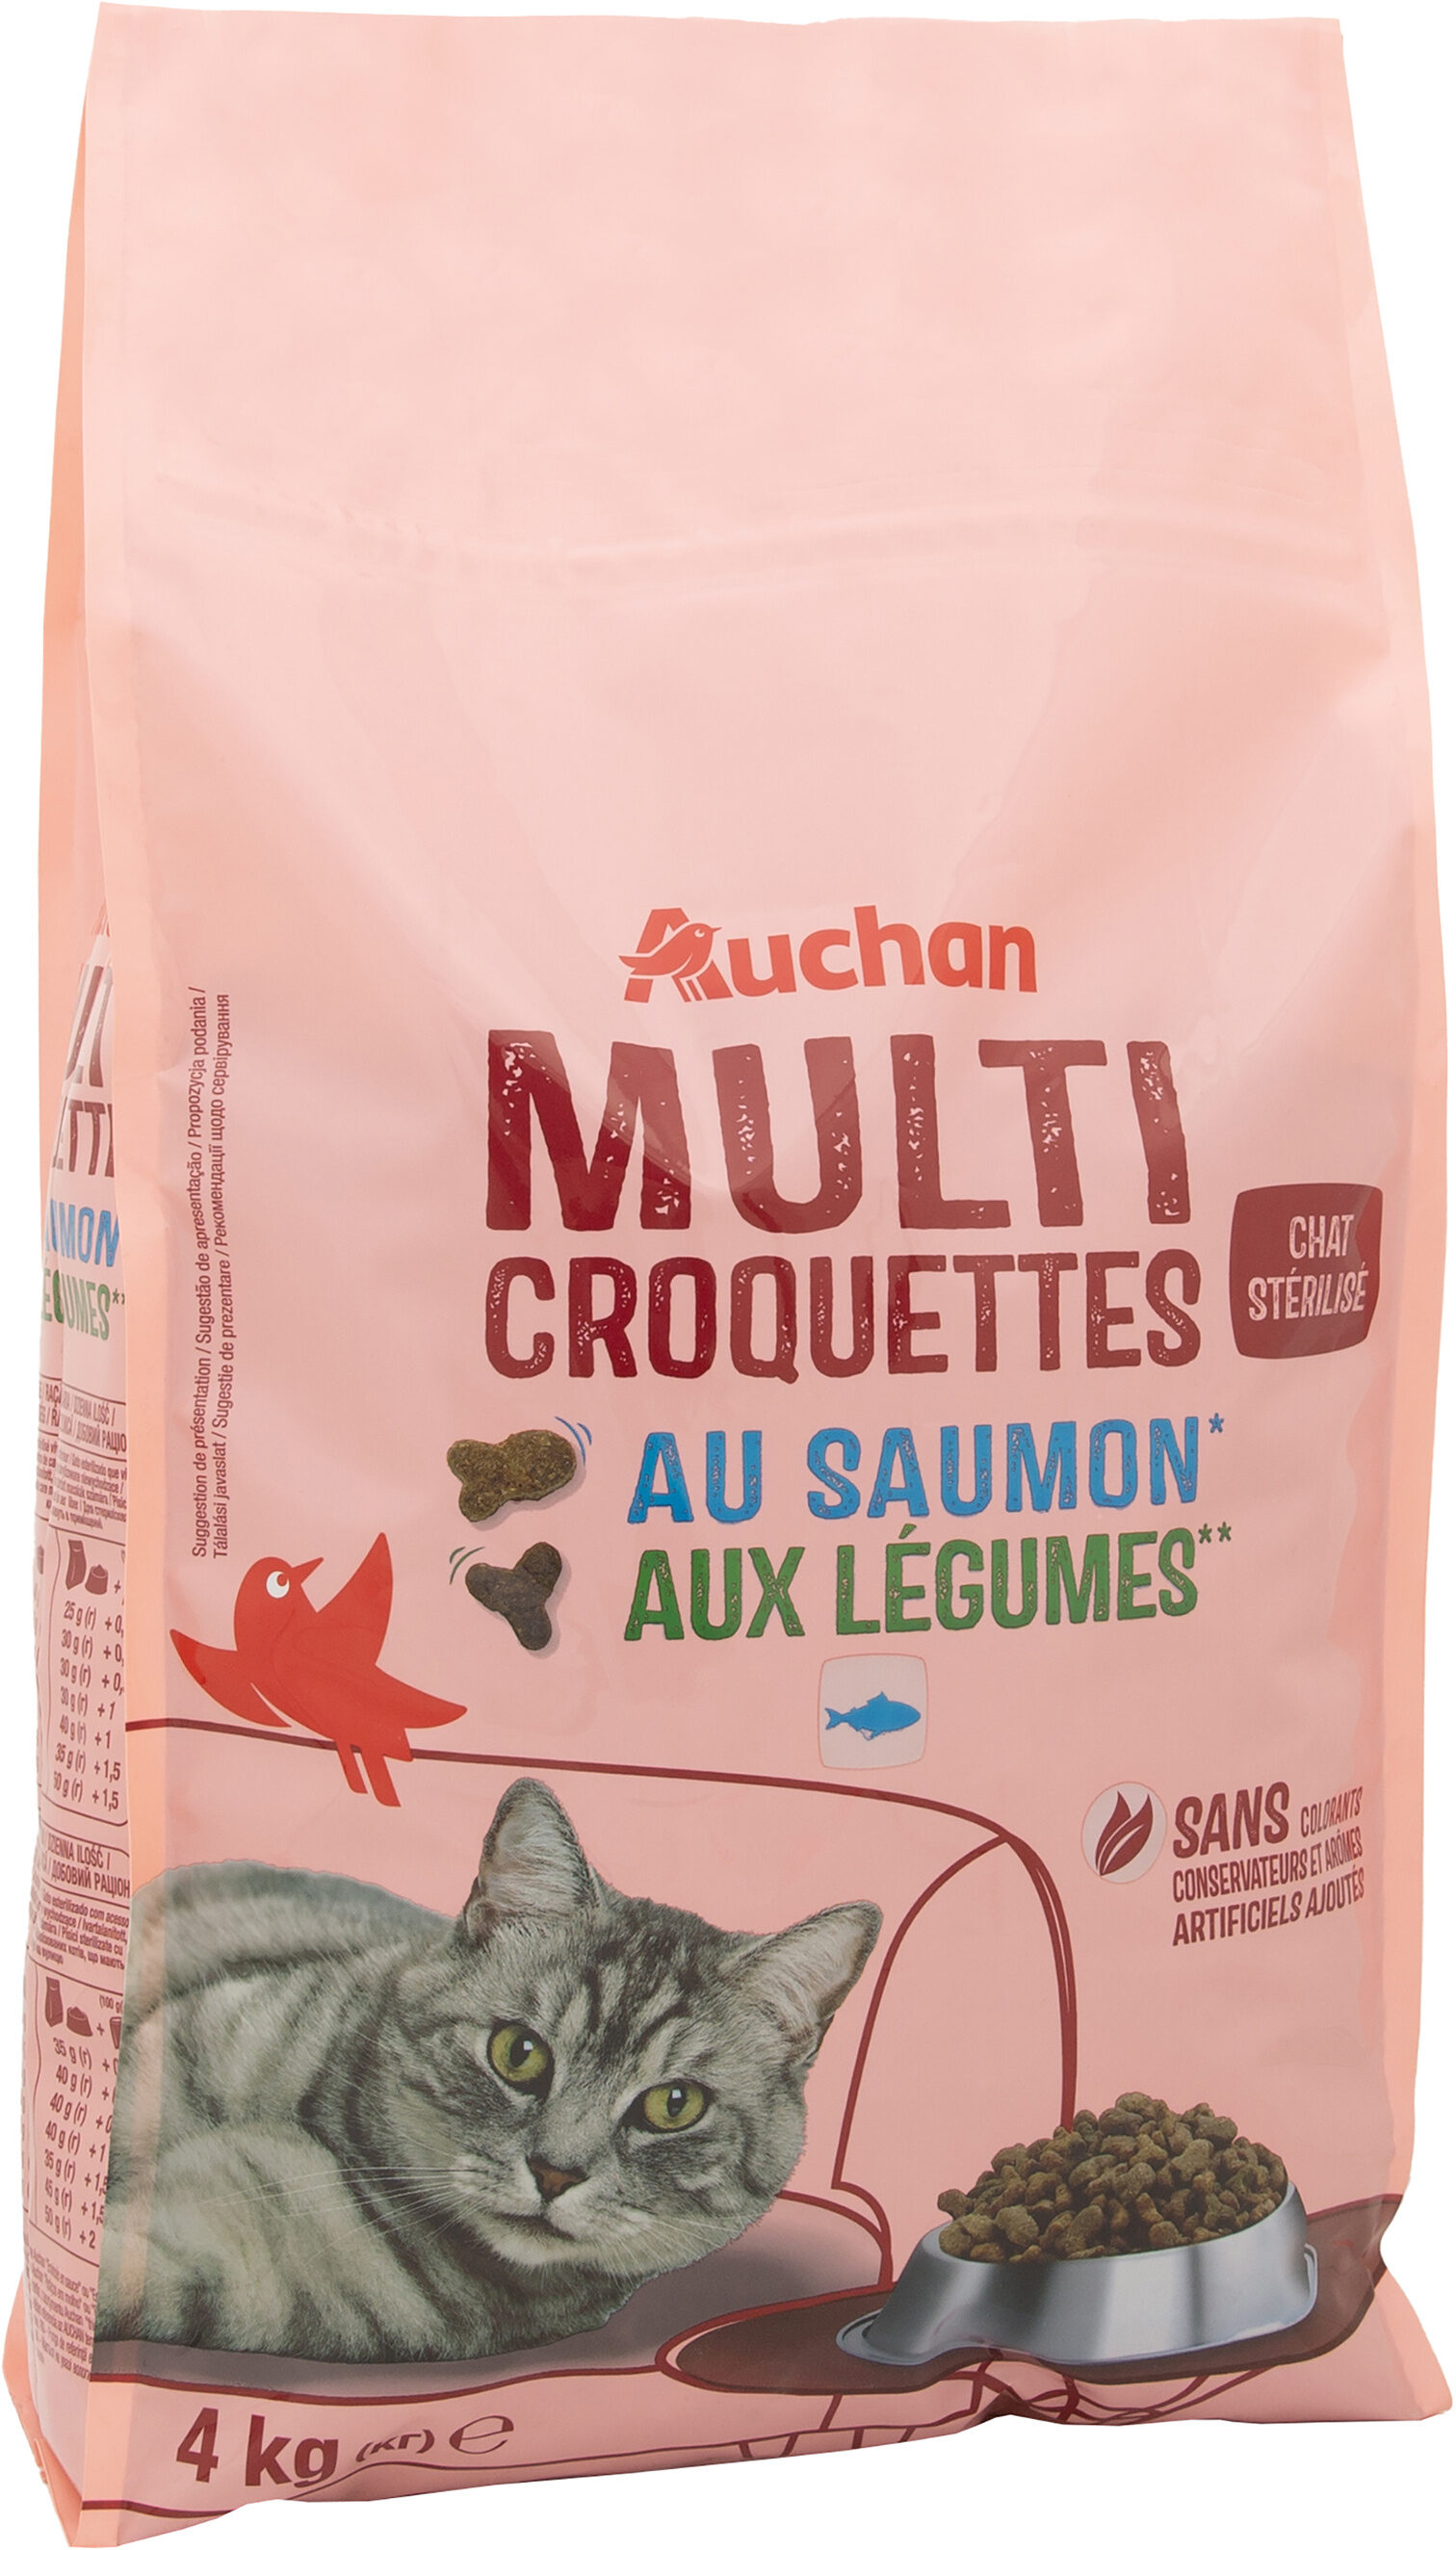 Multi croquettes au saumon* aux légumes** chat stérilisé - Product - fr